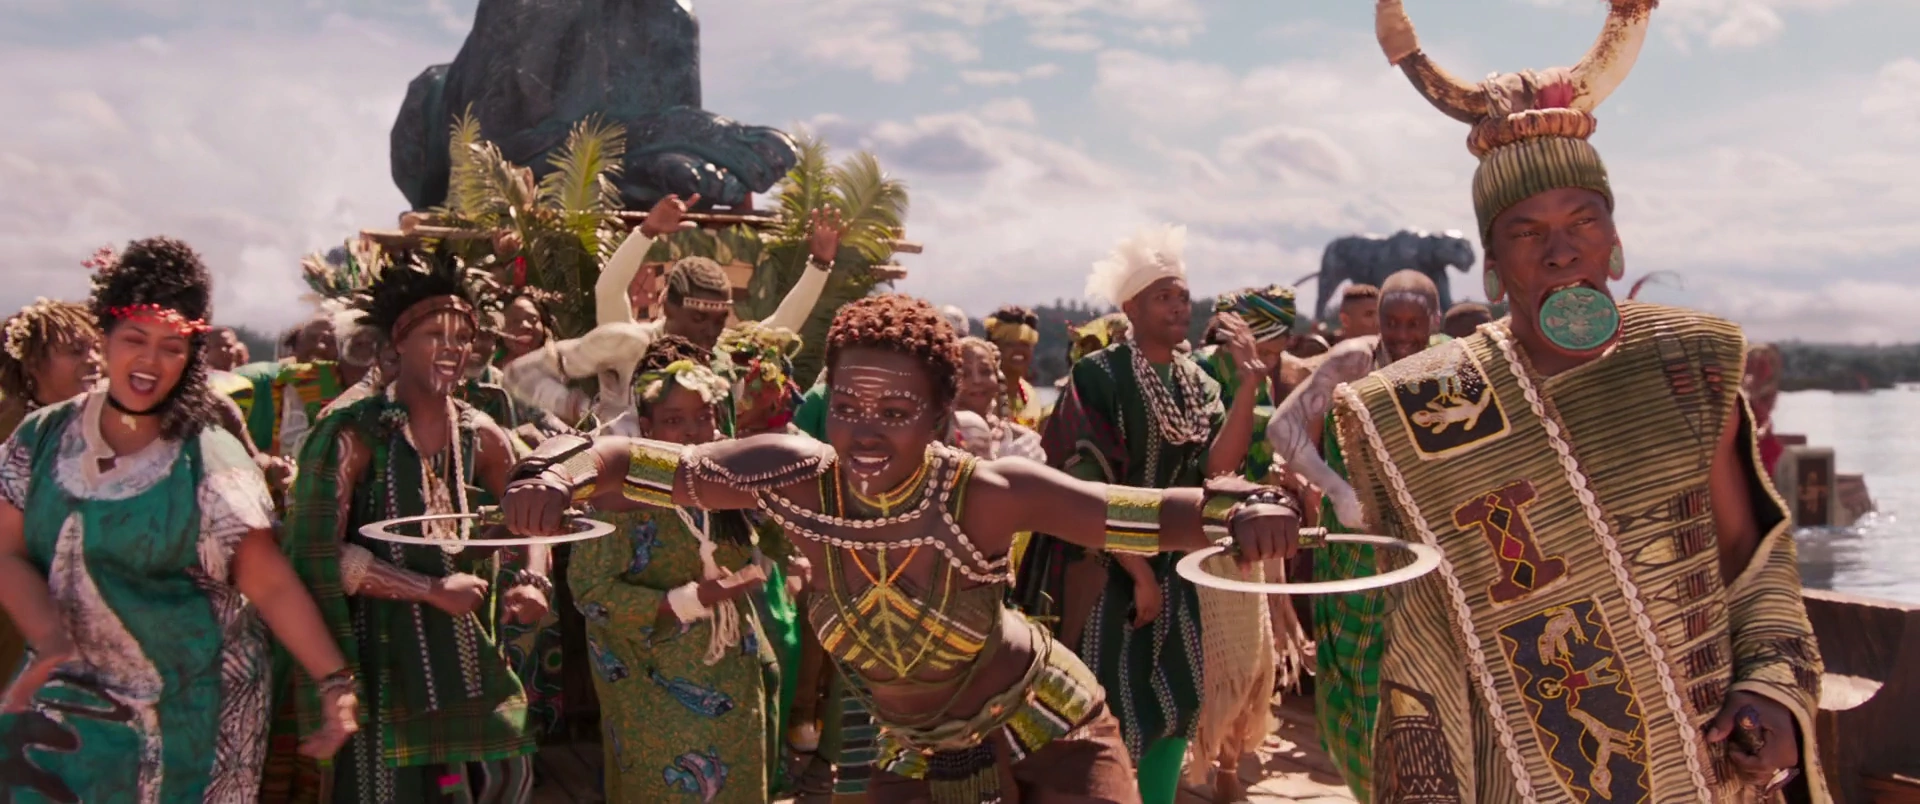 Племена воротами. Черная пантера племена. Африканцы танцуют. Африканские танцы. Ритуальные танцы Африки.